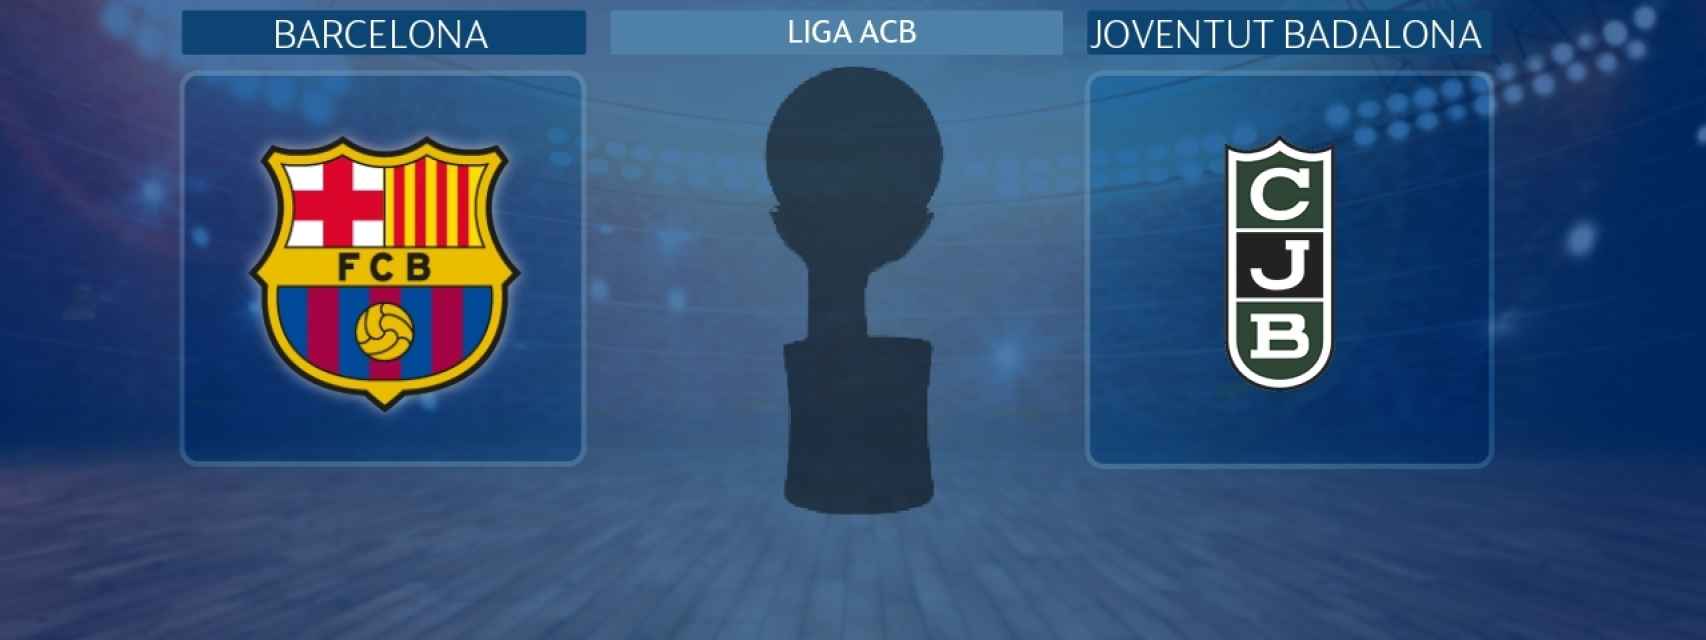 Barcelona - Joventut Badalona, partido de la Liga ACB